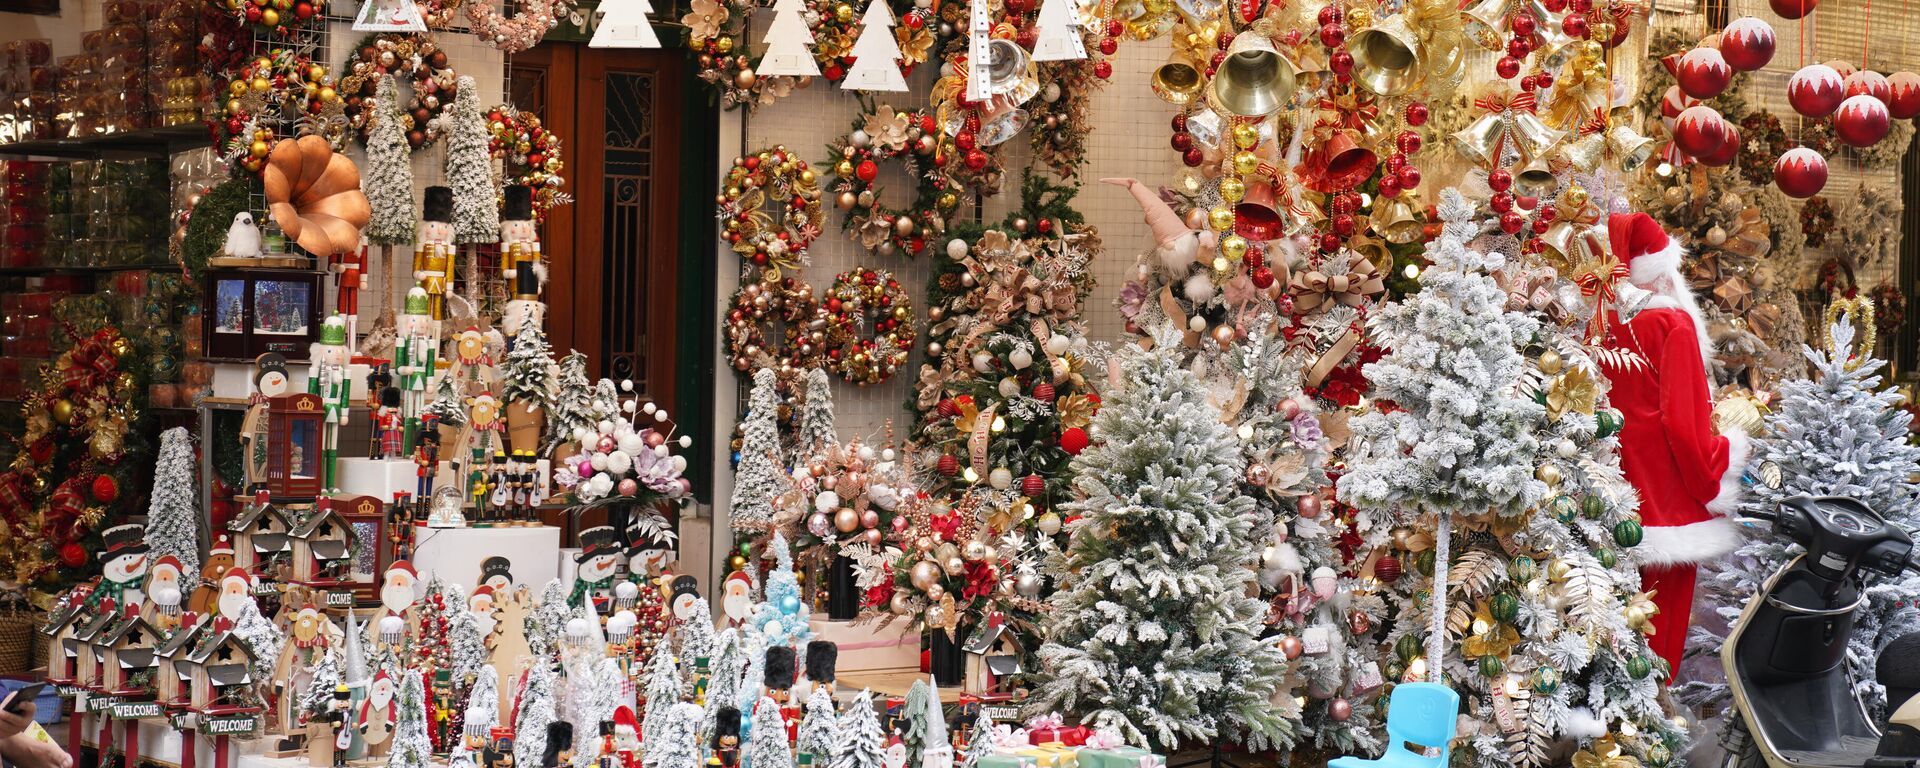 Các cửa hàng tràn ngập đồ trang trí trong dịp Giáng sinh  - Sputnik Việt Nam, 1920, 21.12.2021